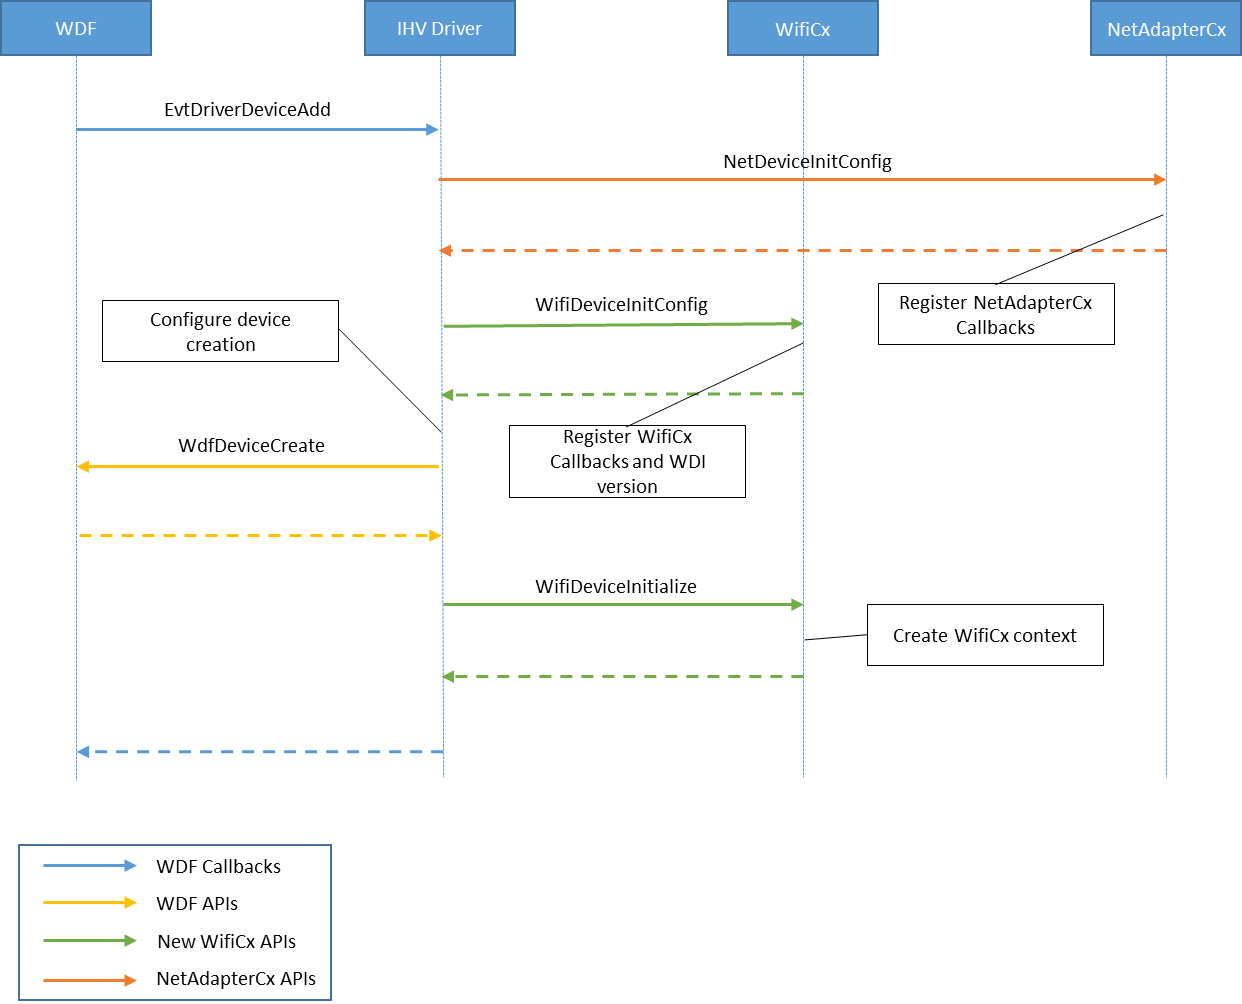 Diagramm, das den Initialisierungsprozess des WiFiCx-Clienttreibers zeigt.